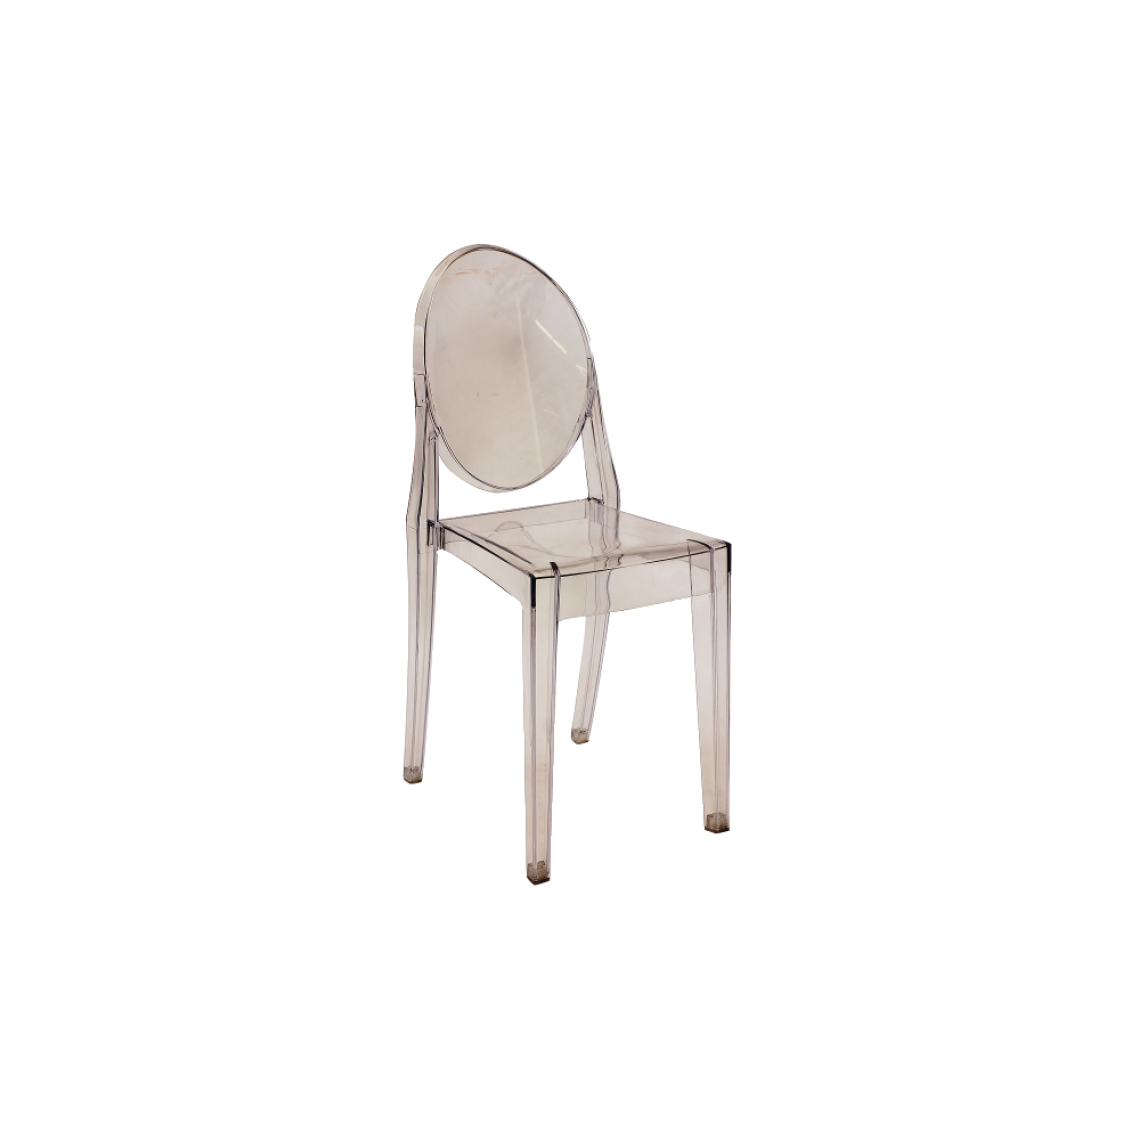 Ac-Deco - Chaise transparente - Martin - 51 x 38 x 90 cm - Polycarbonate - Chaises